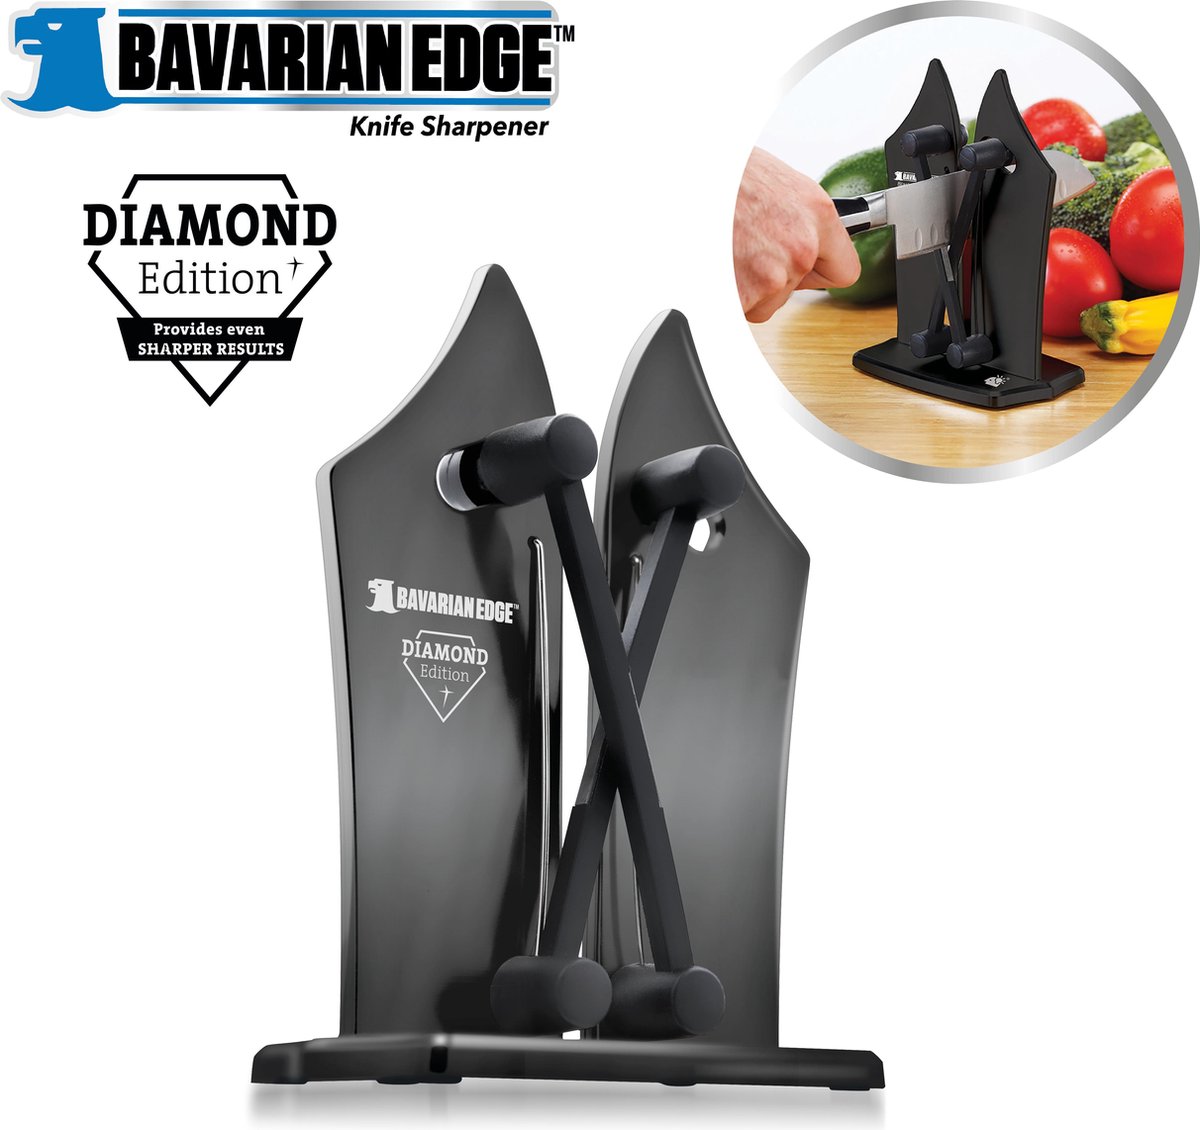 Bavarian Edge Diamond Edition - Knife Sharpener - messenslijper deluxe - pro editie met ingebouwde diamantdeeltjes - maakt alle messen weer scherp - MediaShop